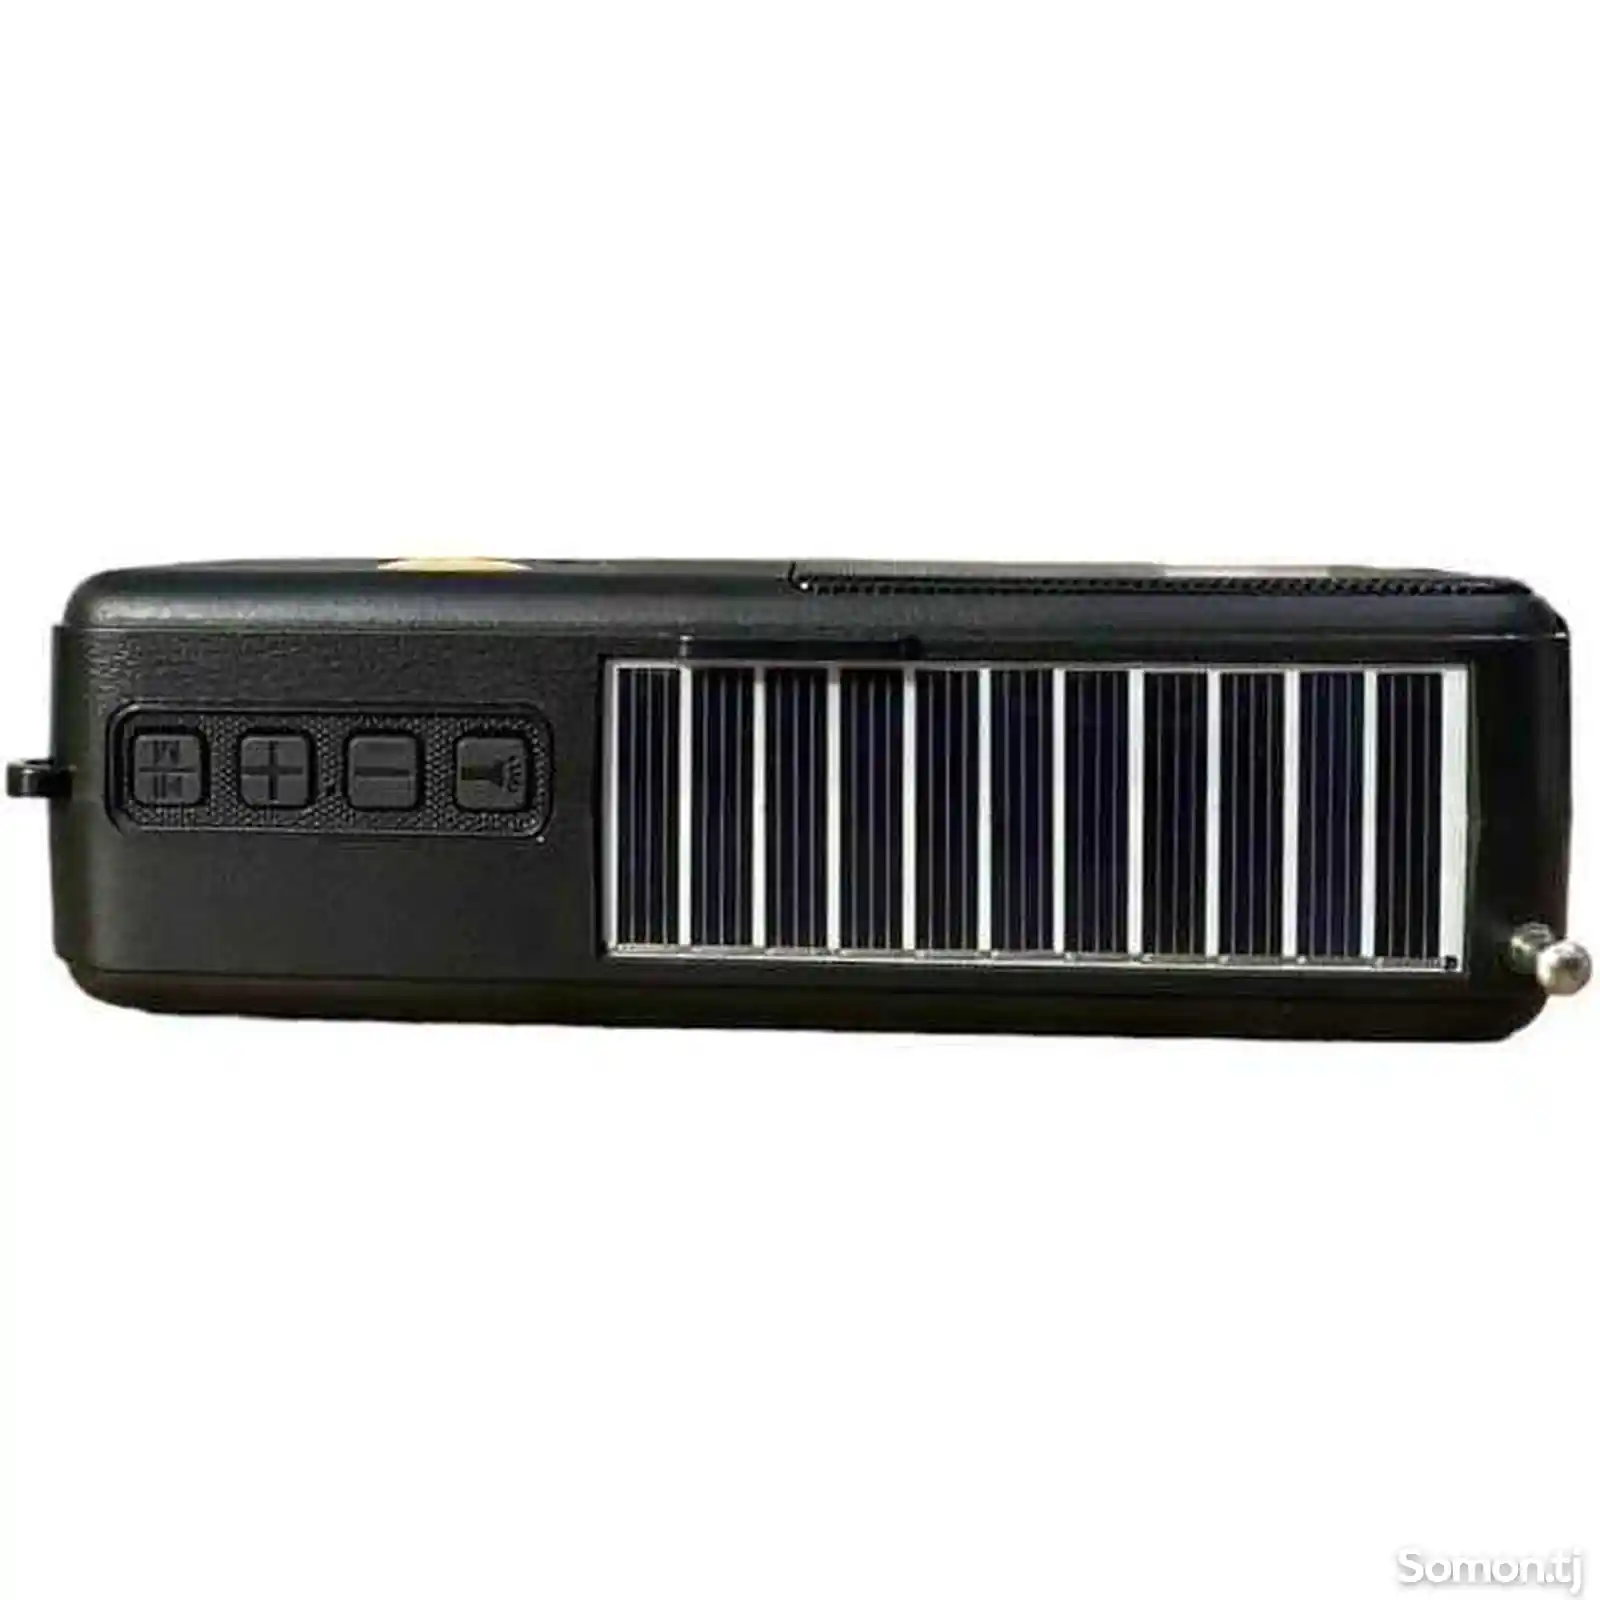 Перезаряжаемый солнечный радиоприемник с фонариком, Z160 - черный-3